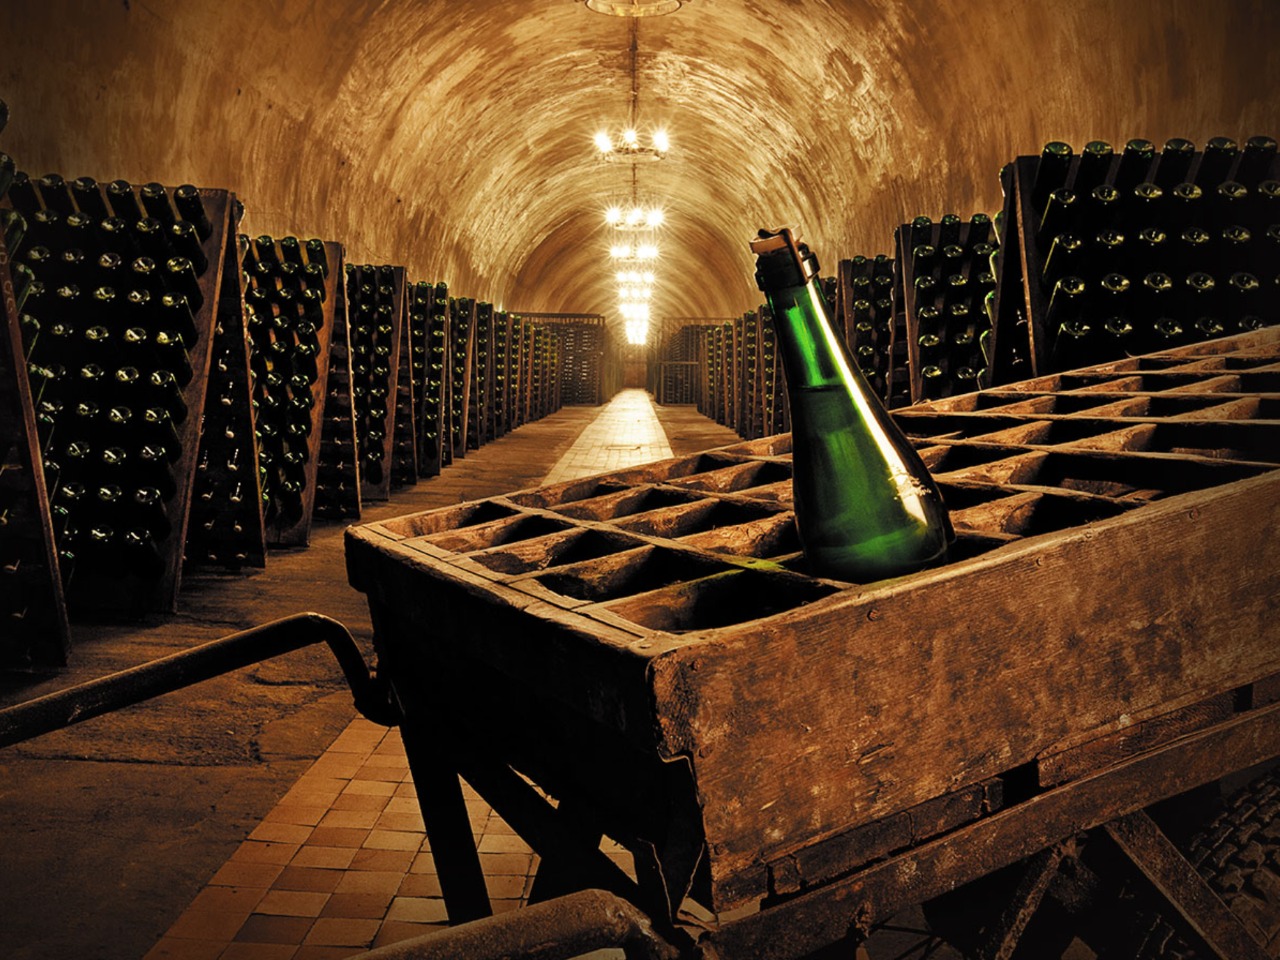 Абрау-Дюрсо: Черноморская Шампань! | Цена 8500₽, отзывы, описание экскурсии